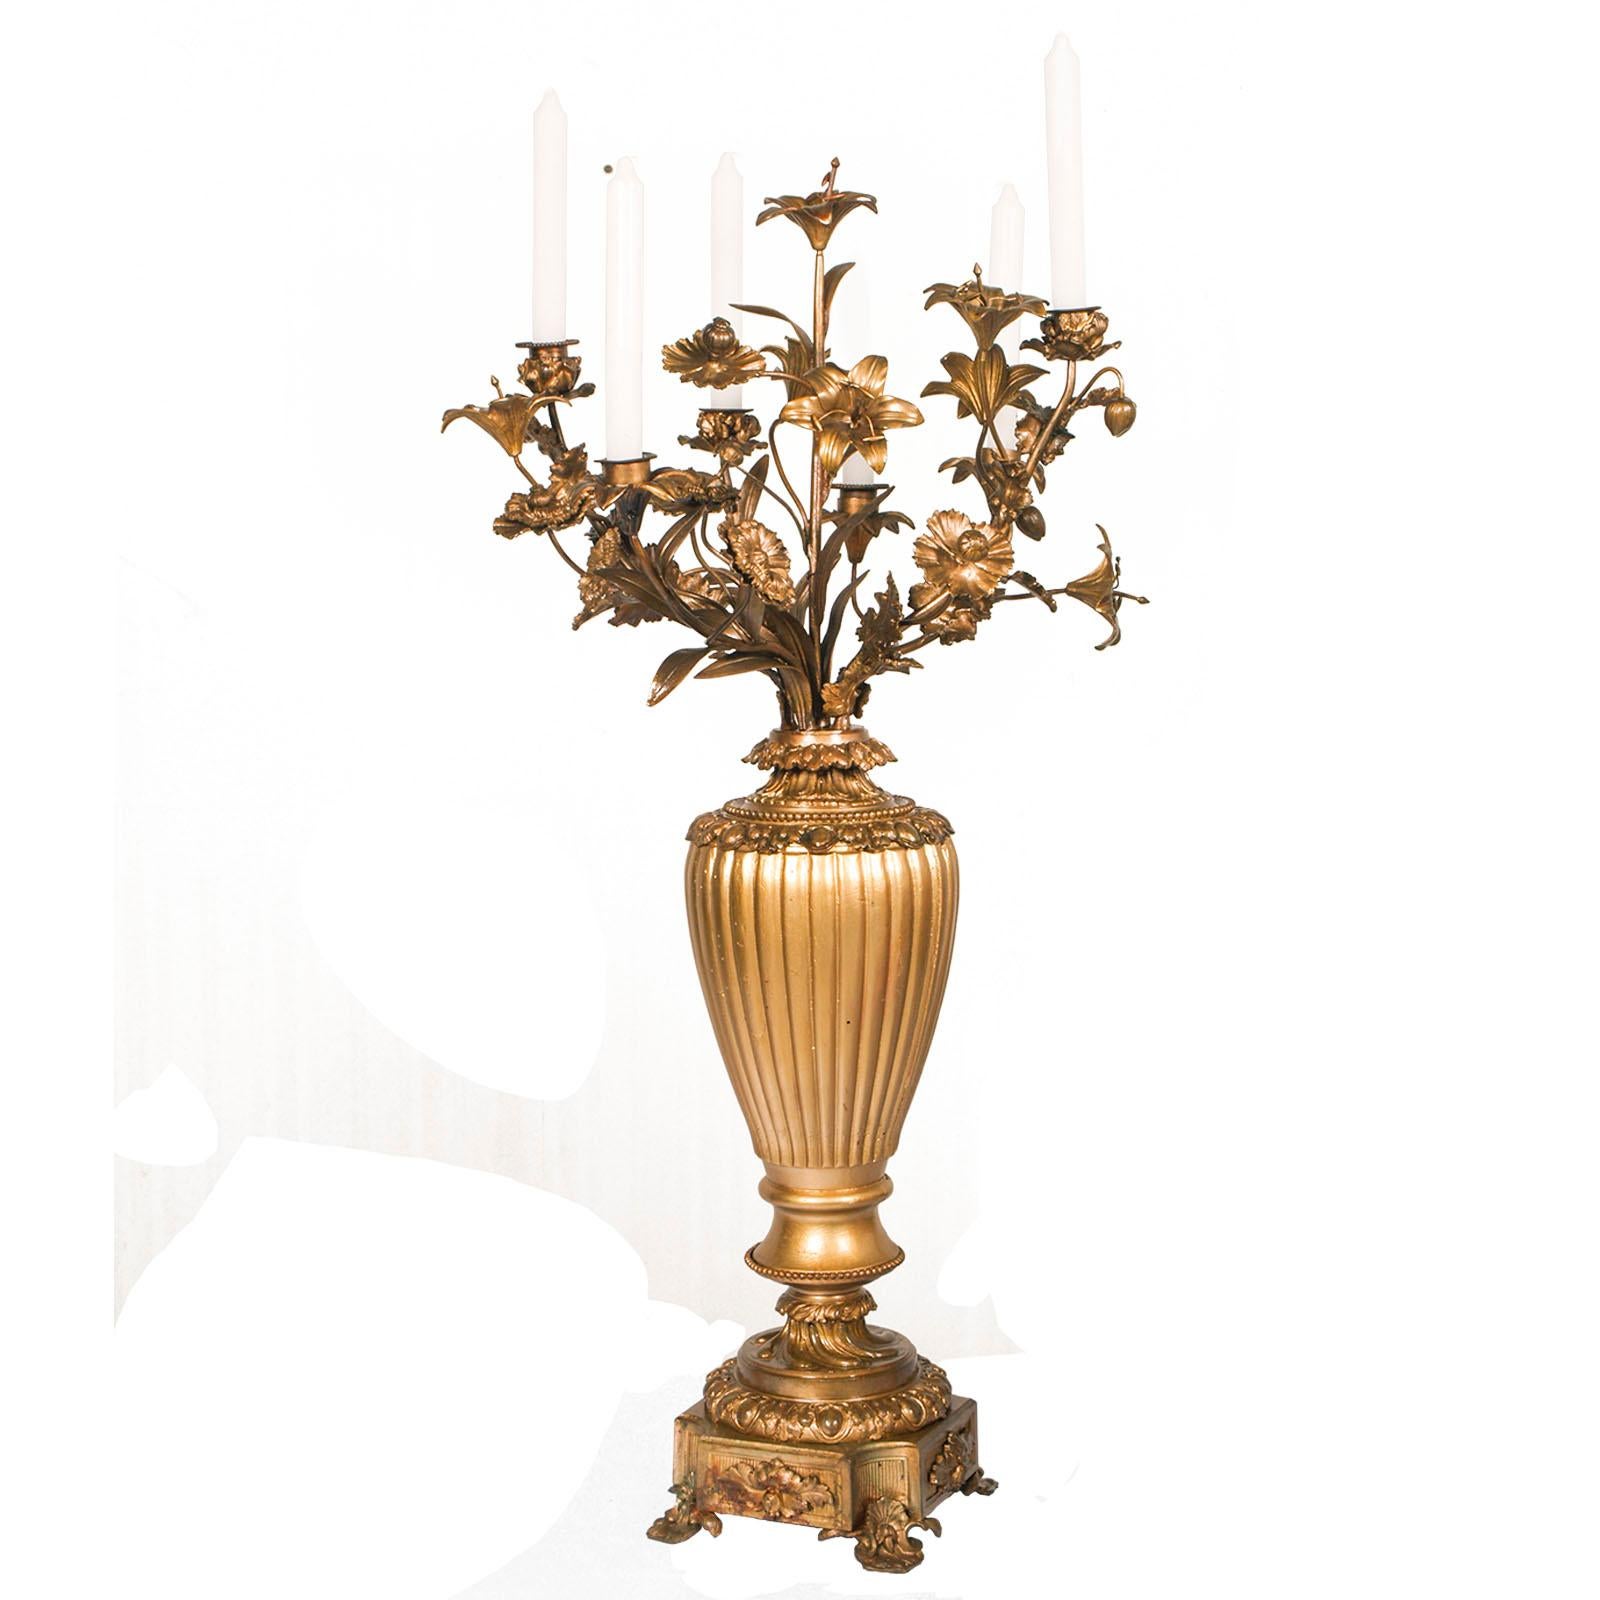 Kostbarer französischer Barockkandelaber aus dem Jahr 1700 in goldener Bronze und vergoldetem Nussbaumholz. 
Wunderbar als Tischdekoration oder zur Verschönerung einer Ecke des Esszimmers

Maße in cm: Höhe 82 x Durchmesser 40.